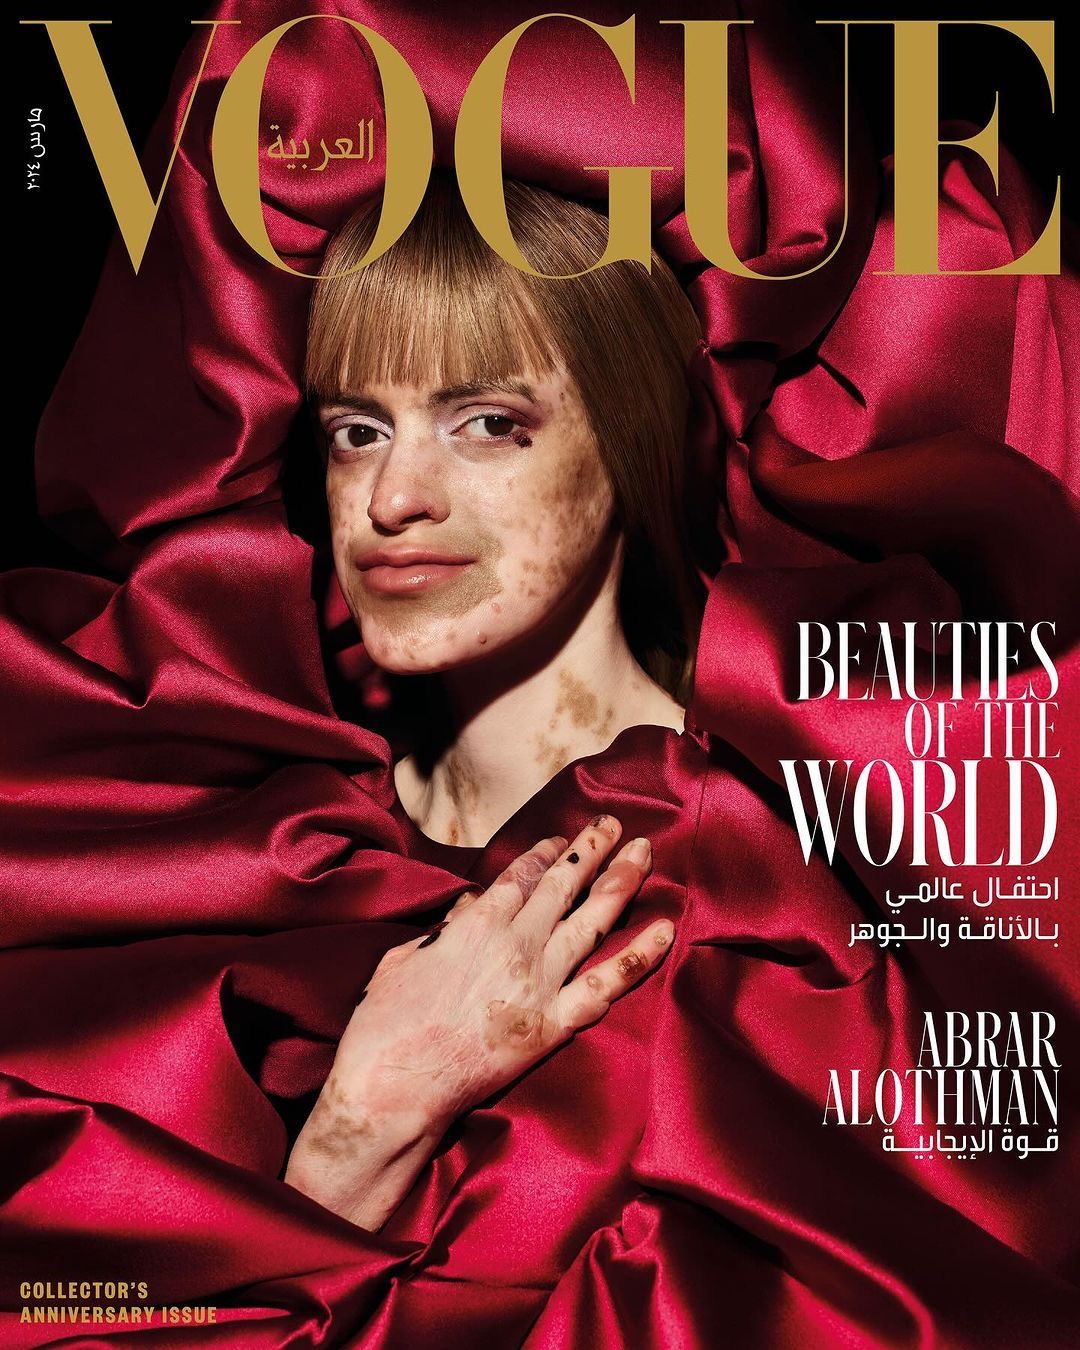 ‏فخورة وسعيدة بإختياري ضمن مجموعة أغلفة العدد السنوي والمميز لـ VOGUE لشهر مارس الذي يدور موضوعه حول "جميلات العالم " و أن الجمال ينبع من الداخل ♥️🦋 